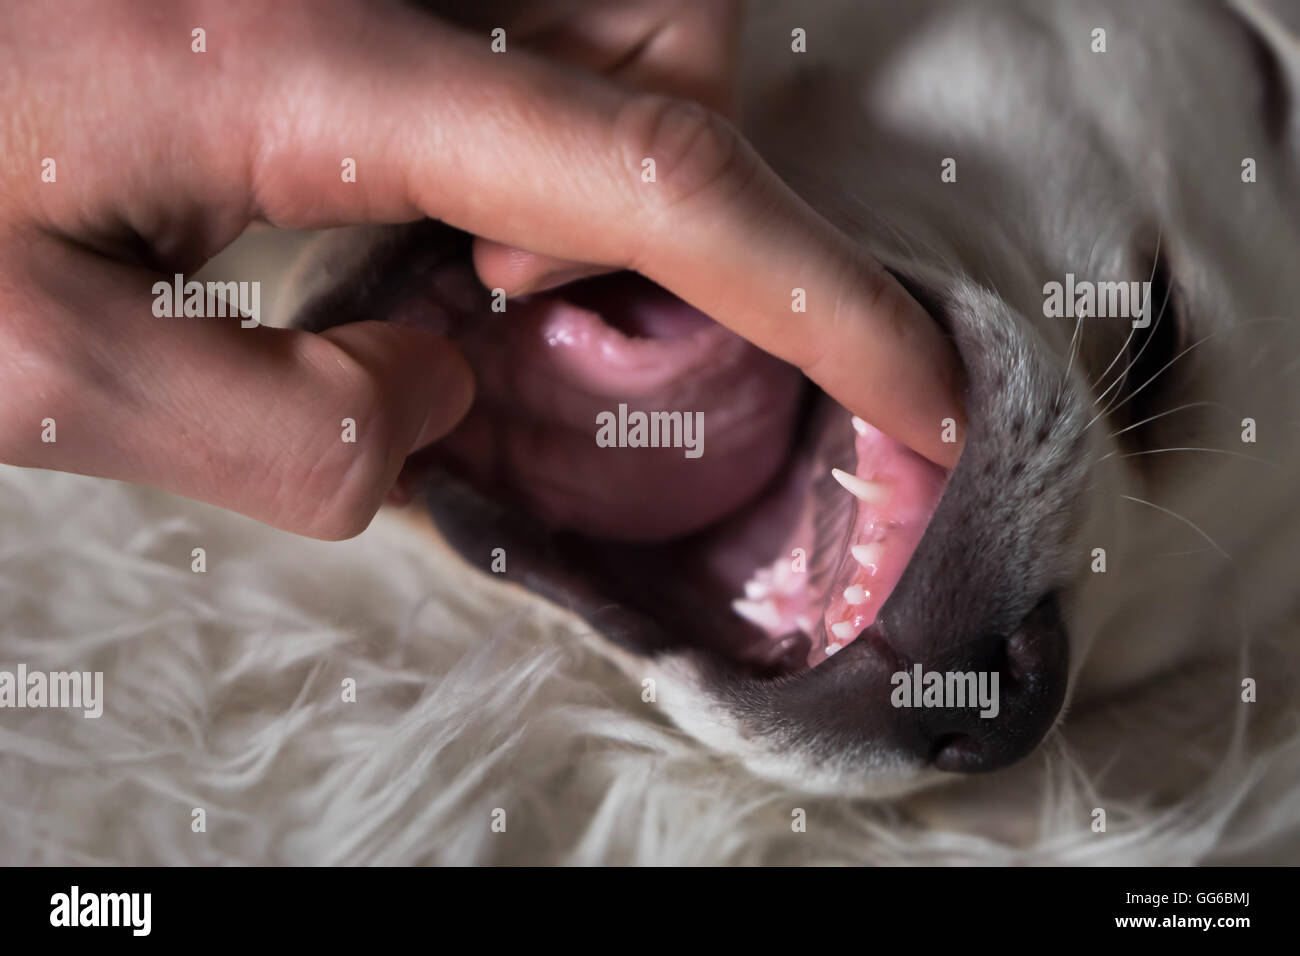 Die spitzen Zähnen eines Welpen während der Untersuchung in einem Tierarzt - Hundebiss gesund Stockfoto